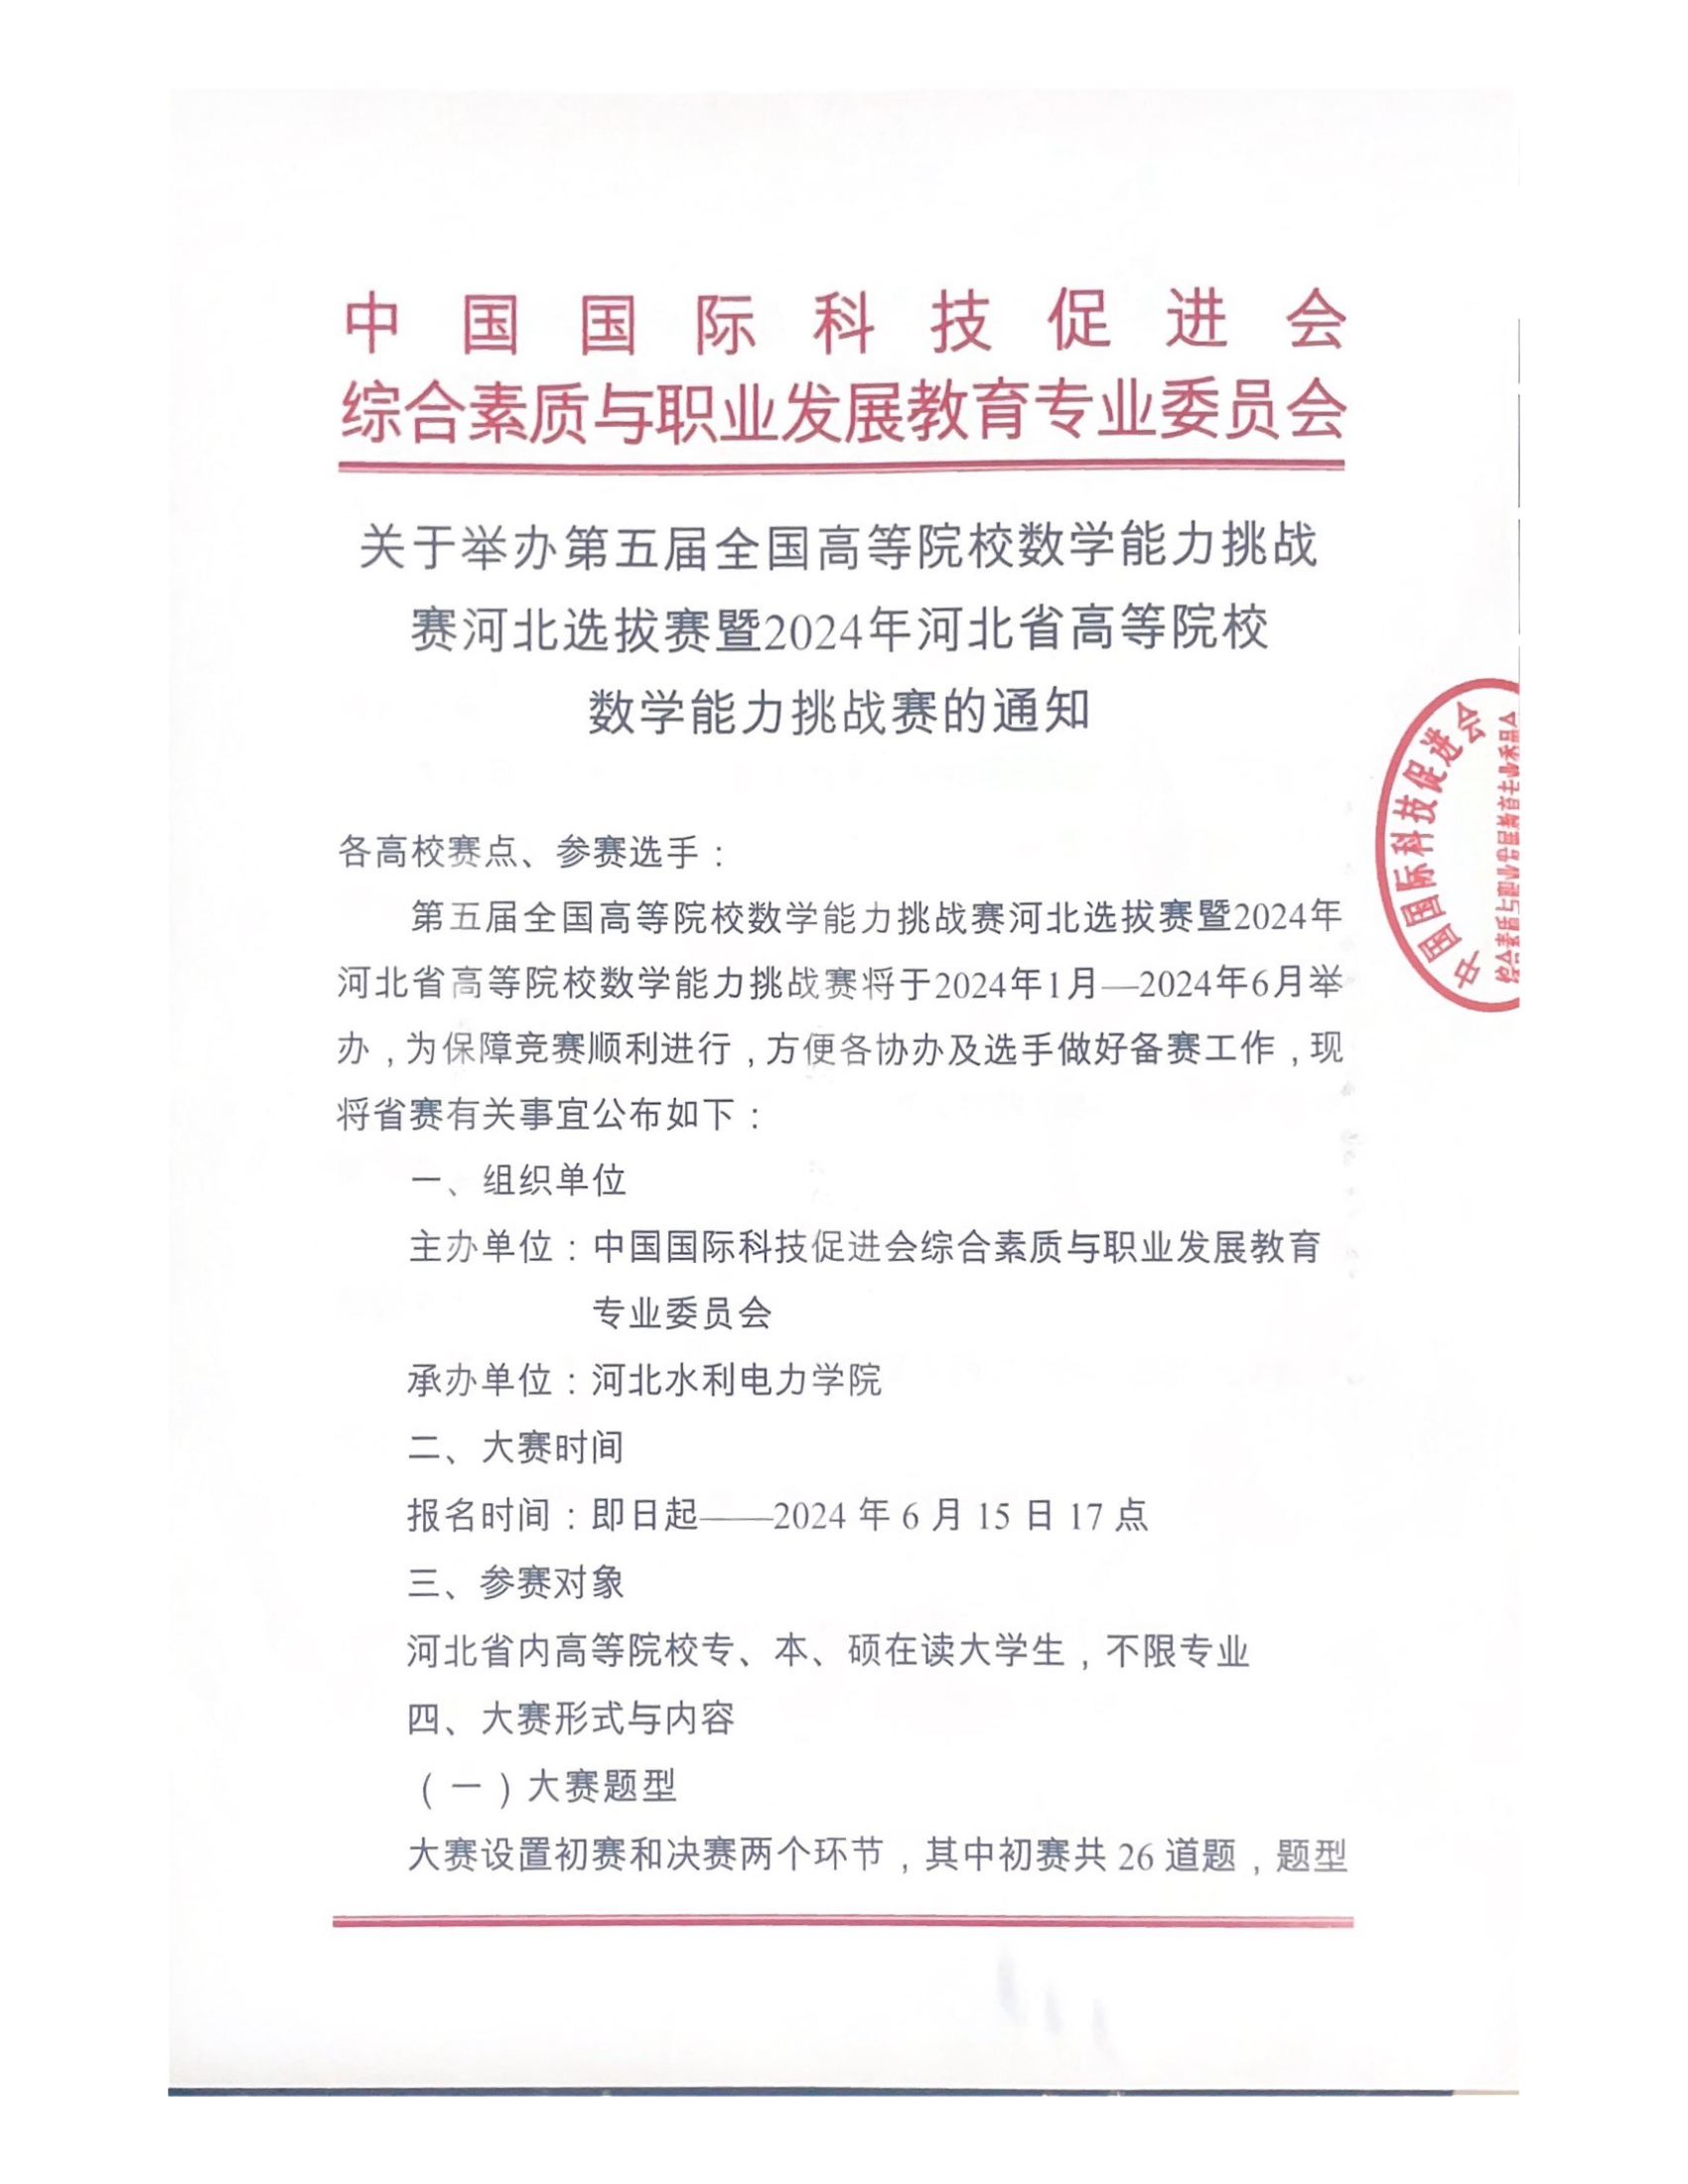 【河北赛区】关于举办2024年河北省高等院校数学能力挑战赛的通知_00.png